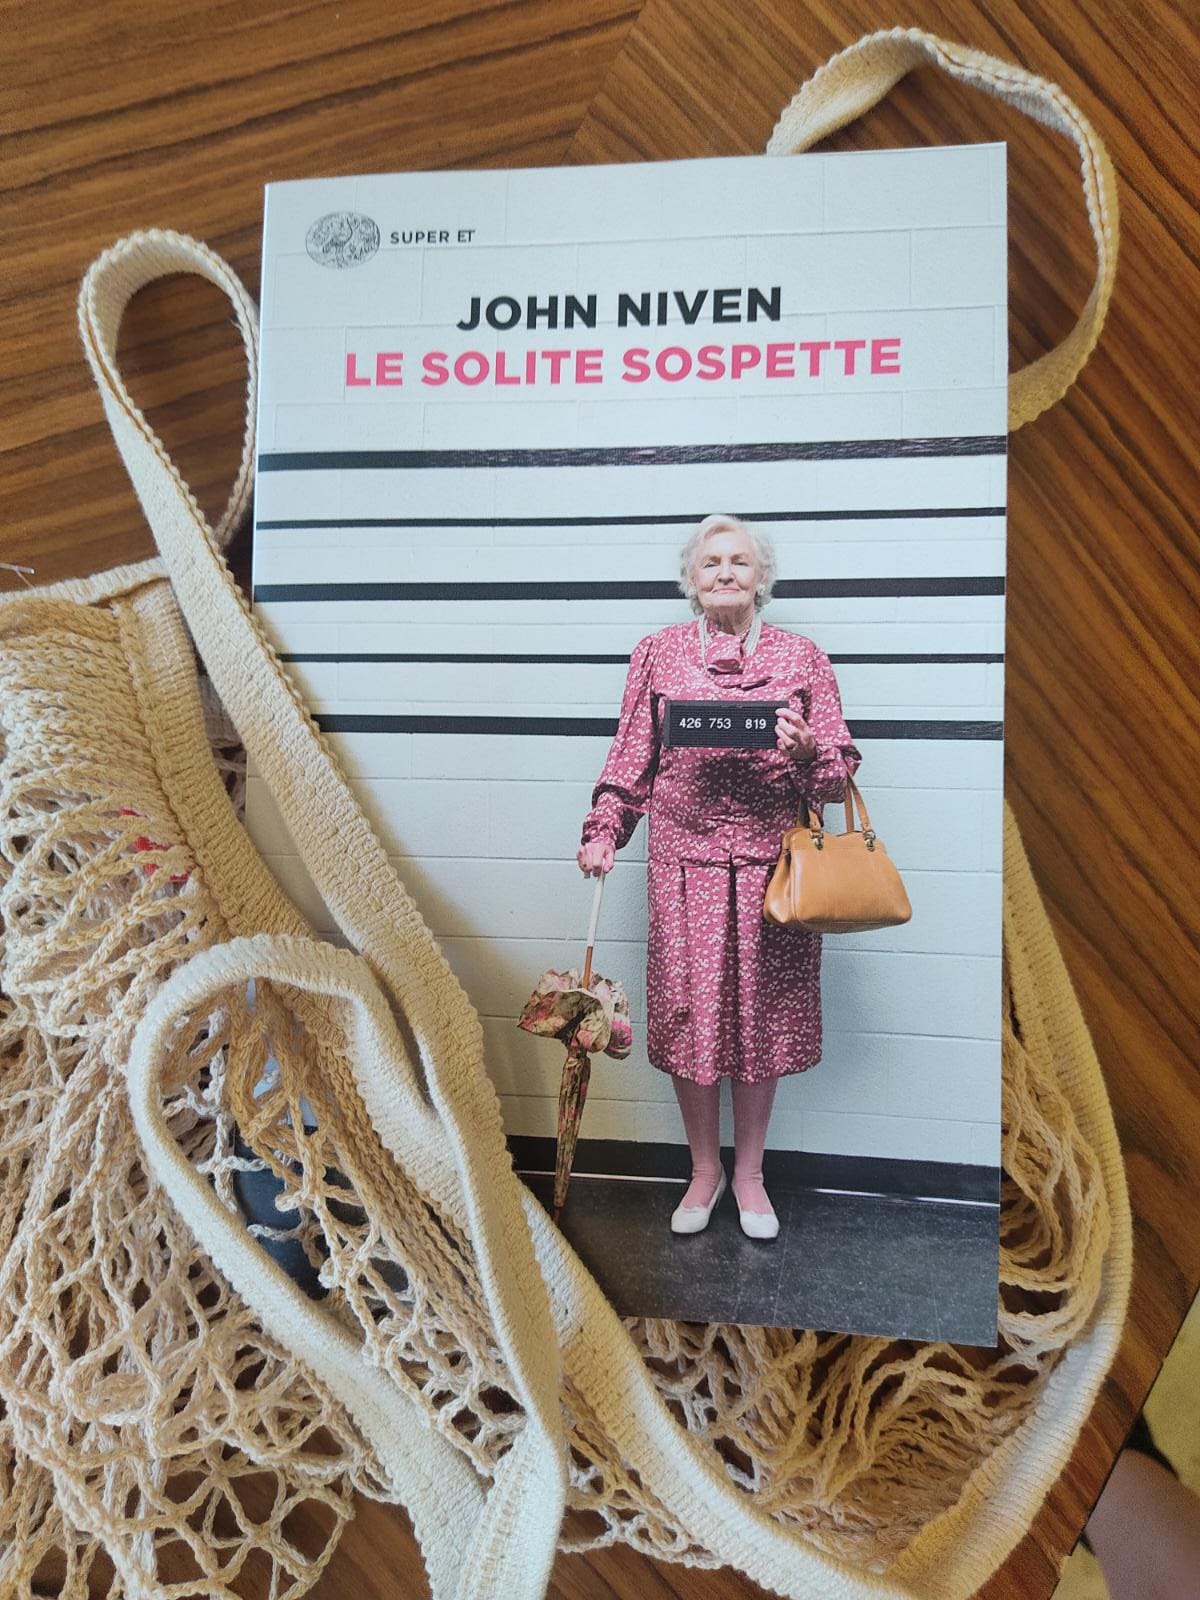 Le solite sospette – John Niven. Una strana banda di sessantenni rapinatrici